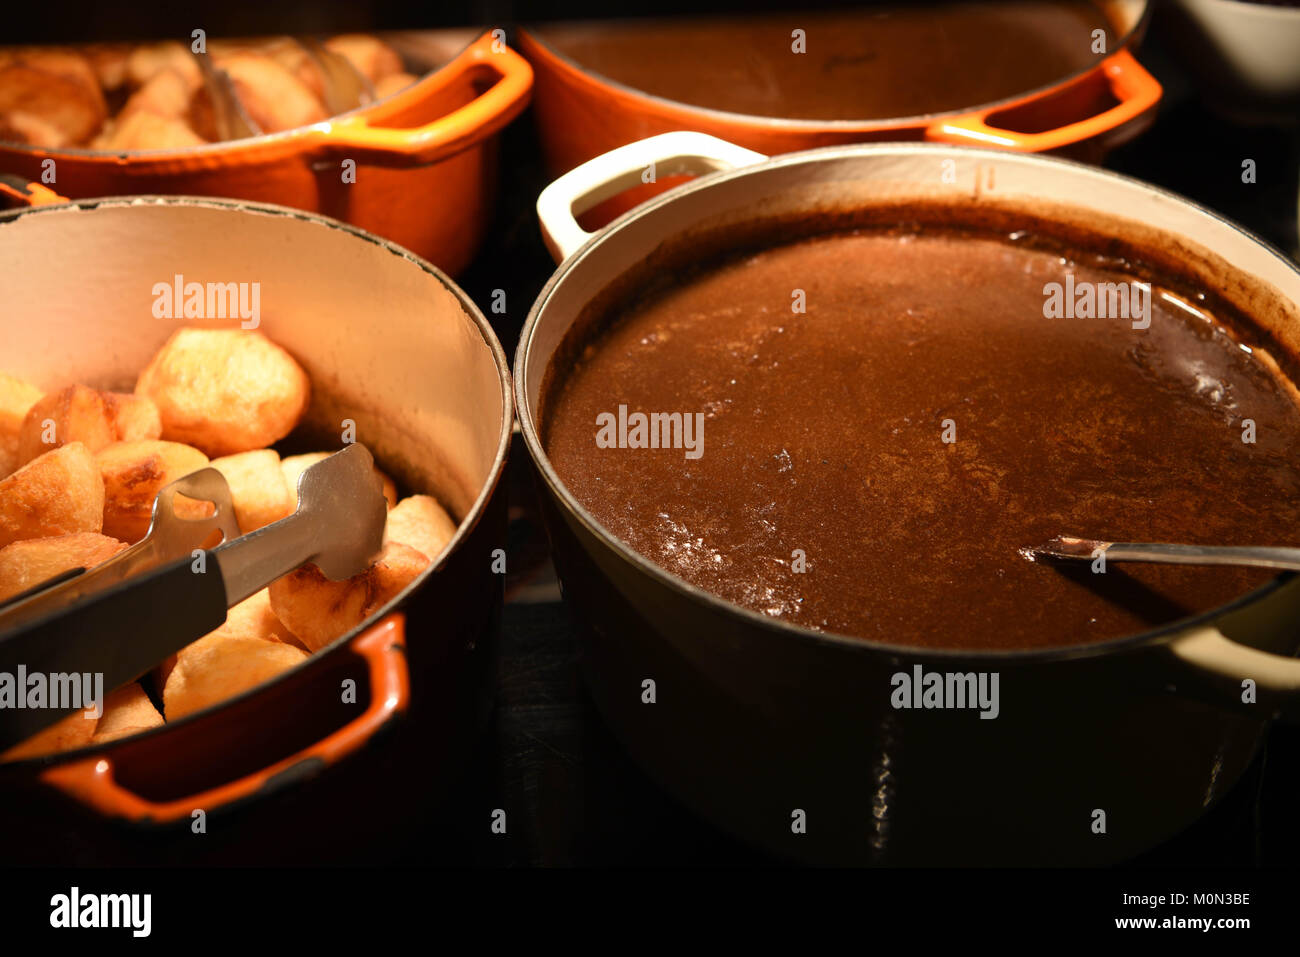 Essen Fotografie Bild des traditionellen Englischen golden knusprige Bratkartoffeln und erfahrene heiße Soße in Töpfe oder Pfannen bereit zu essen Stockfoto